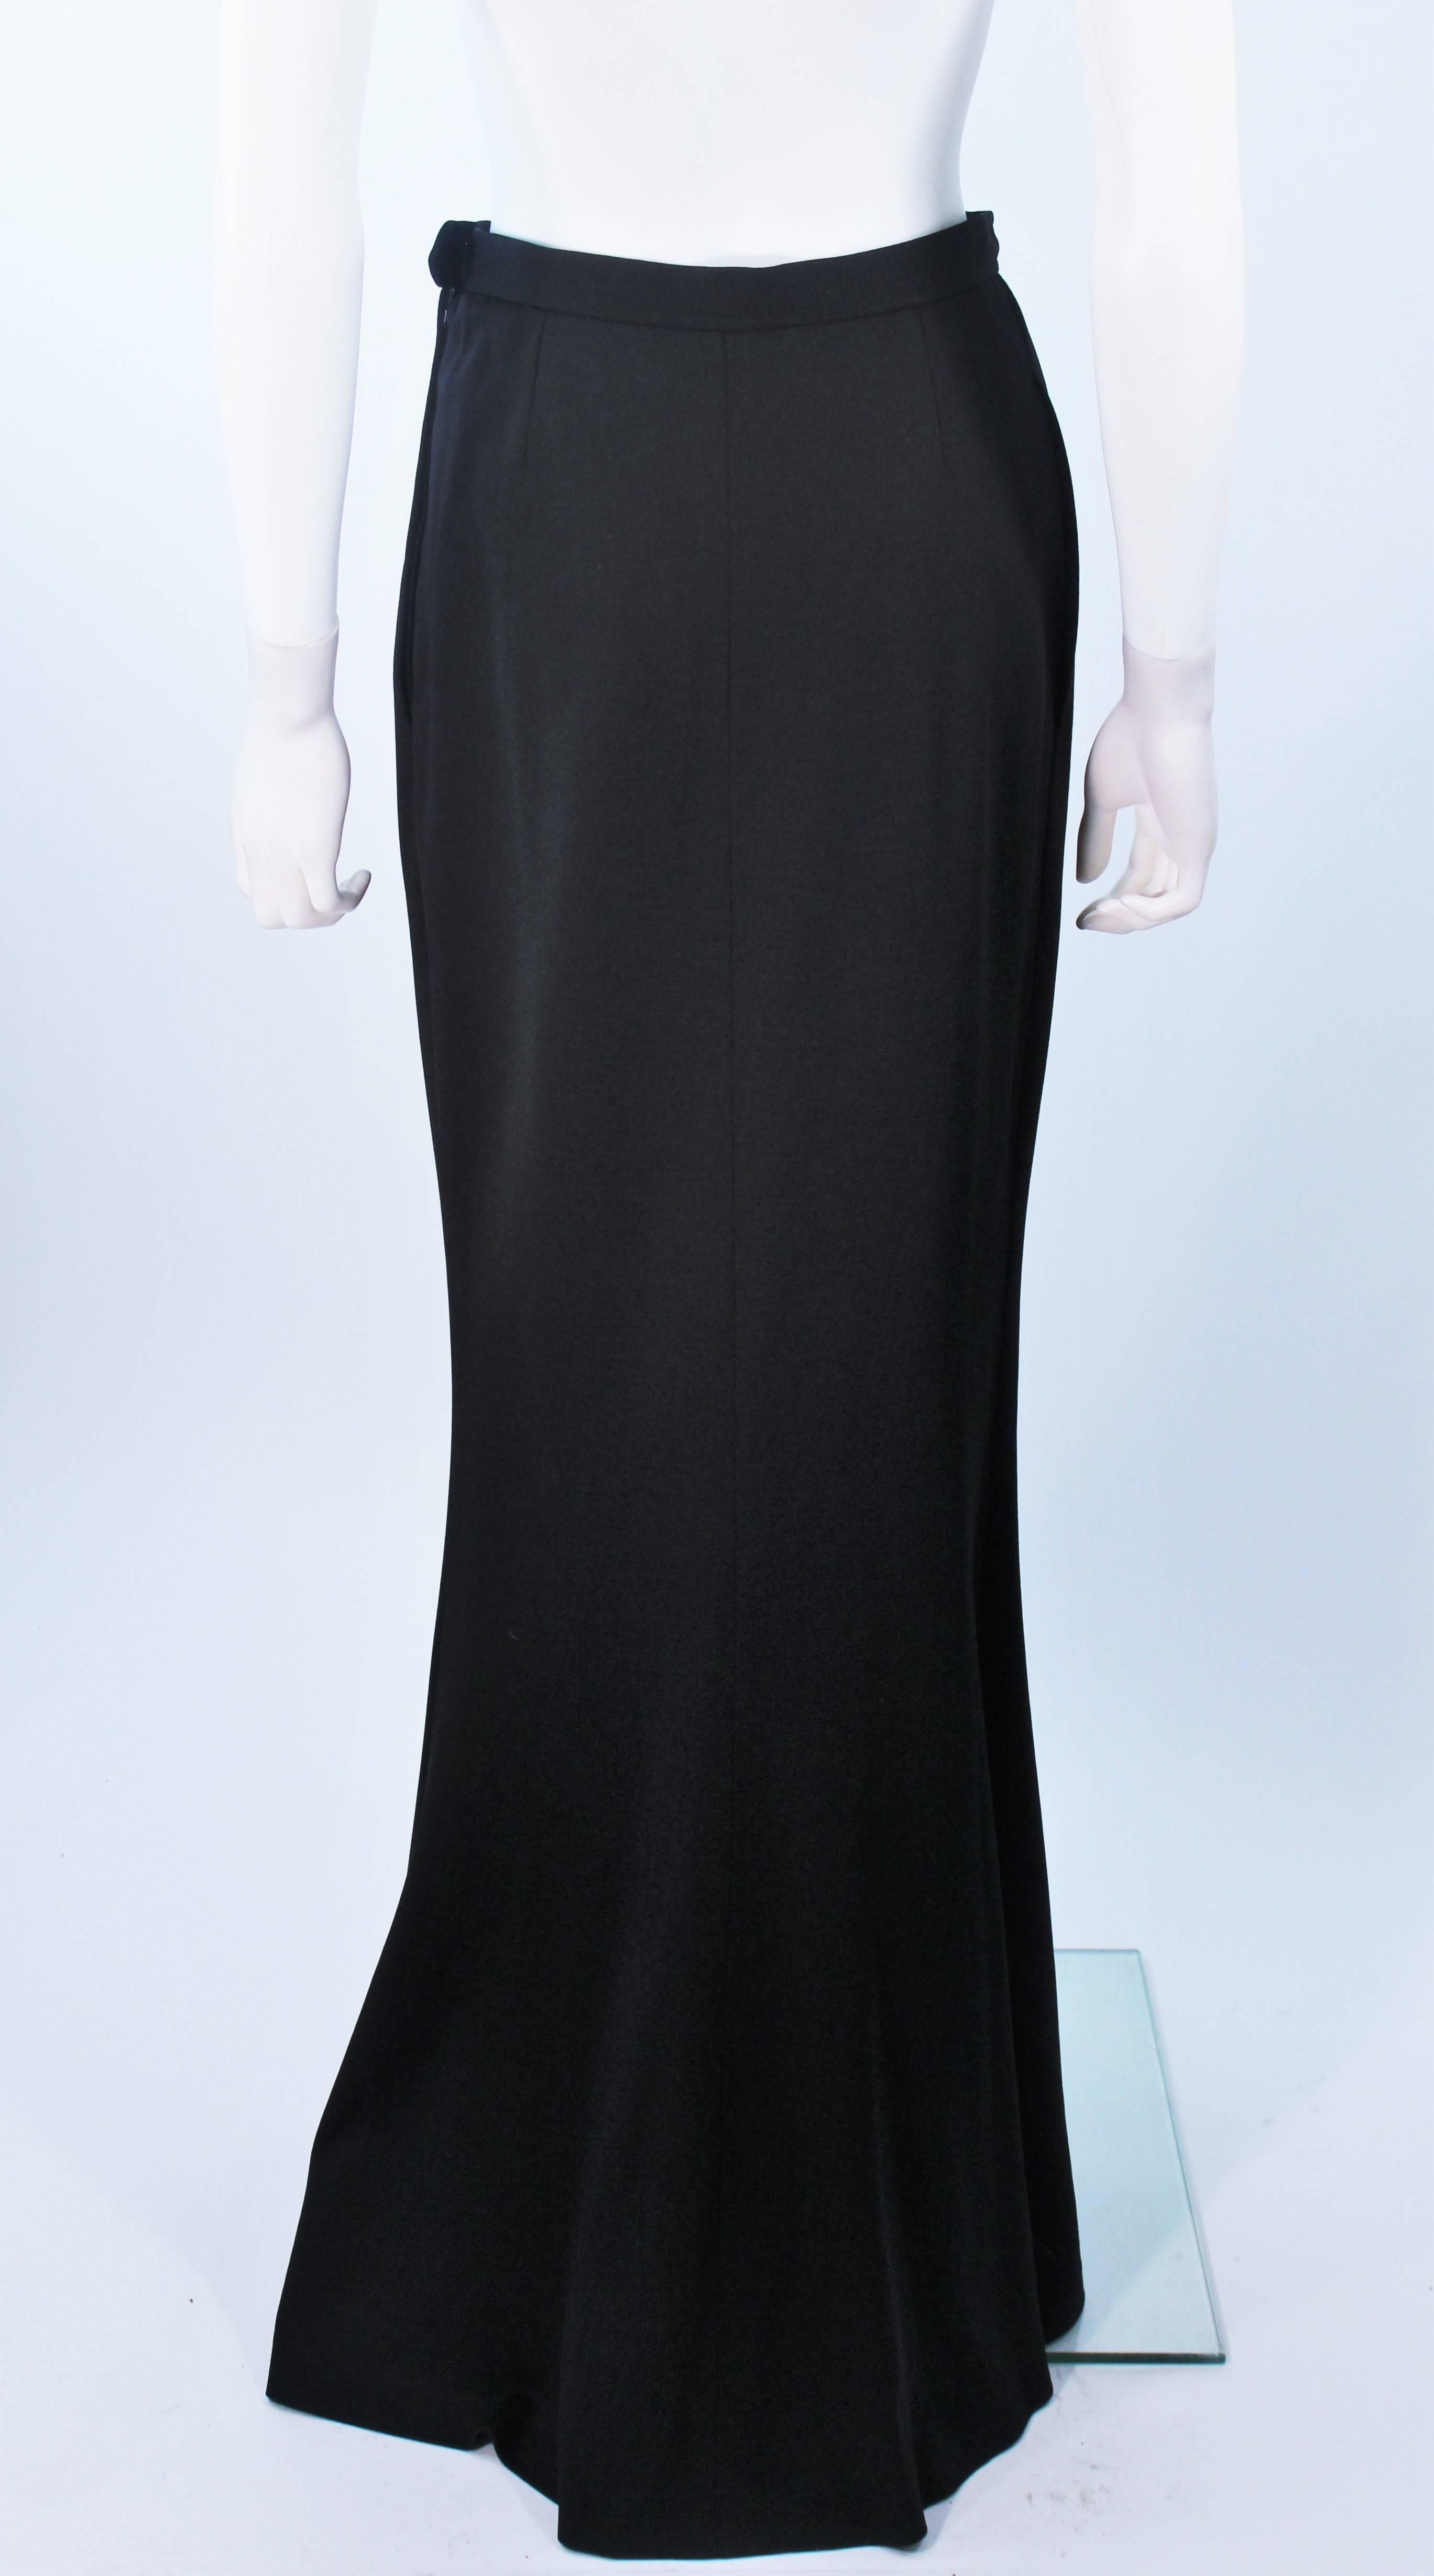 YVES SAINT LAURENT Black Full Length Mermaid Flare Skirt with Slit Size 2-4 2